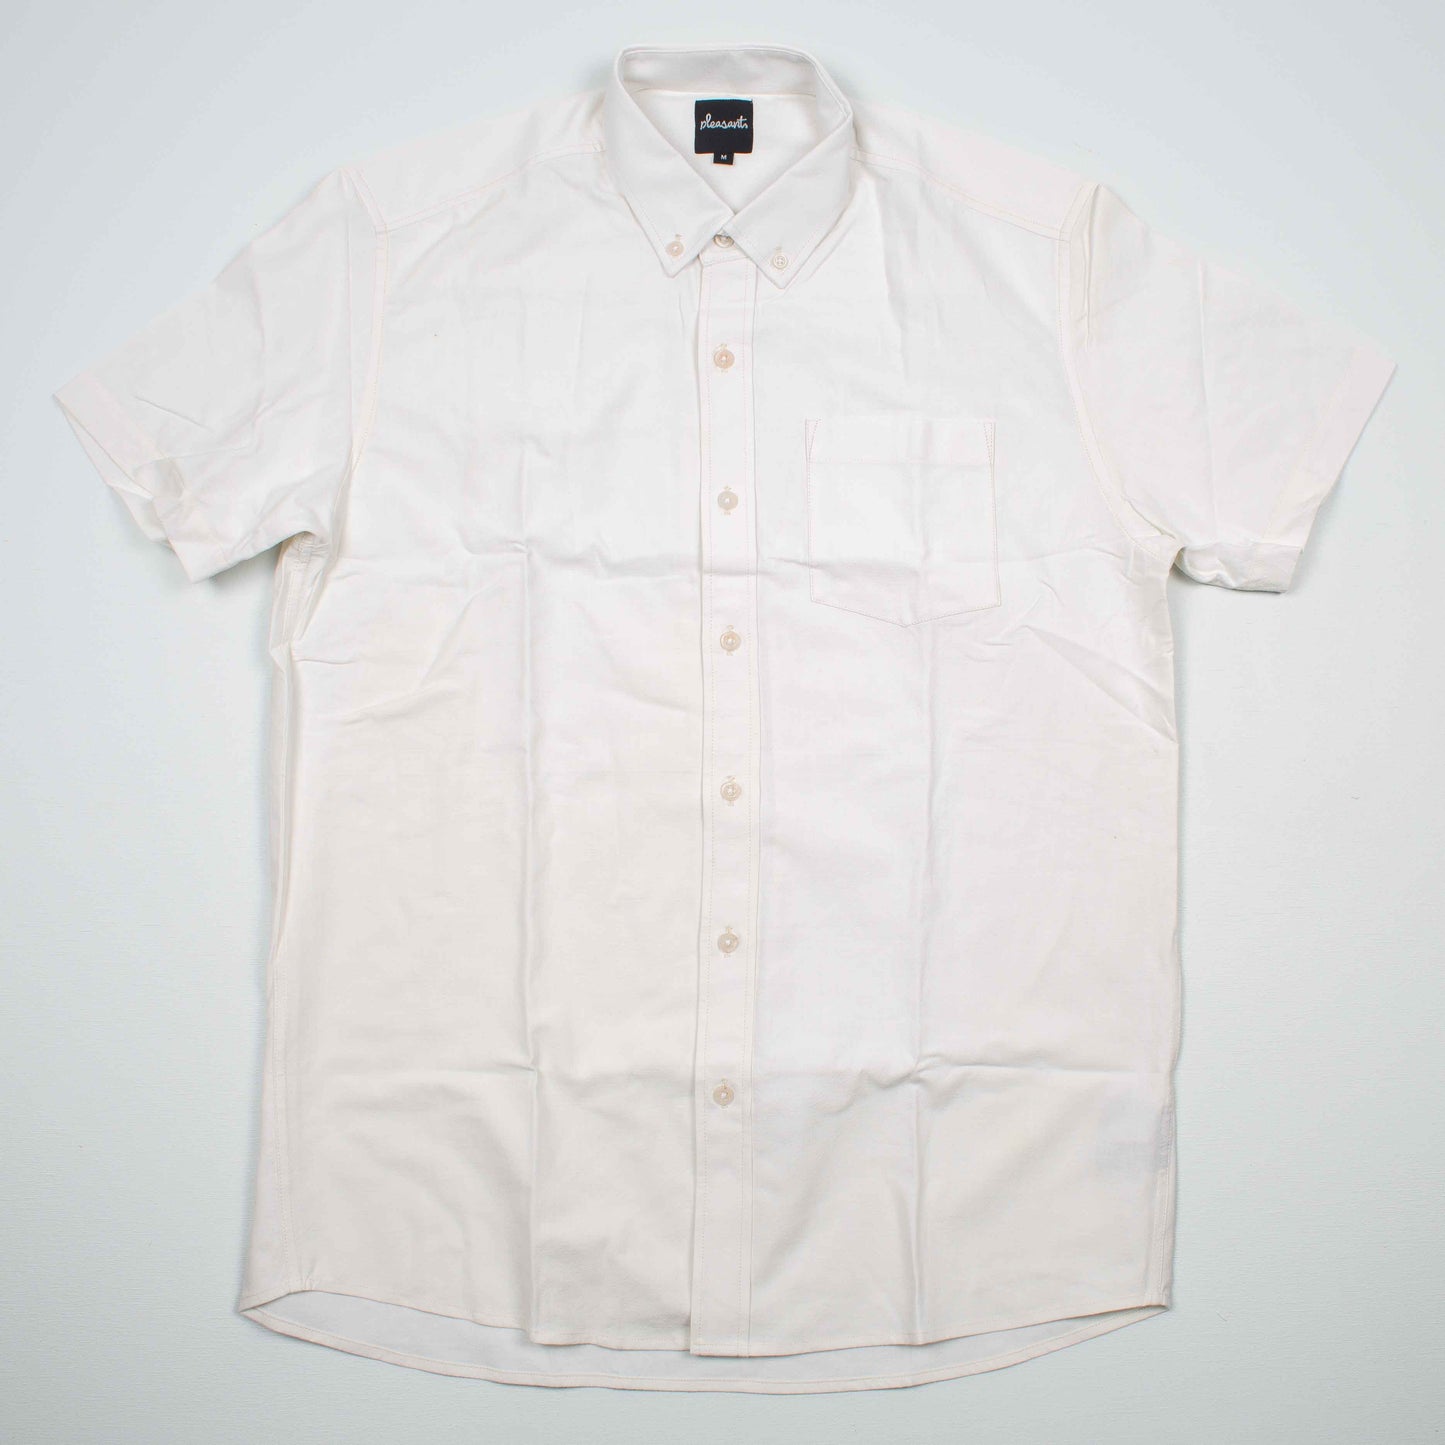 Plain White Upcycled Shirt